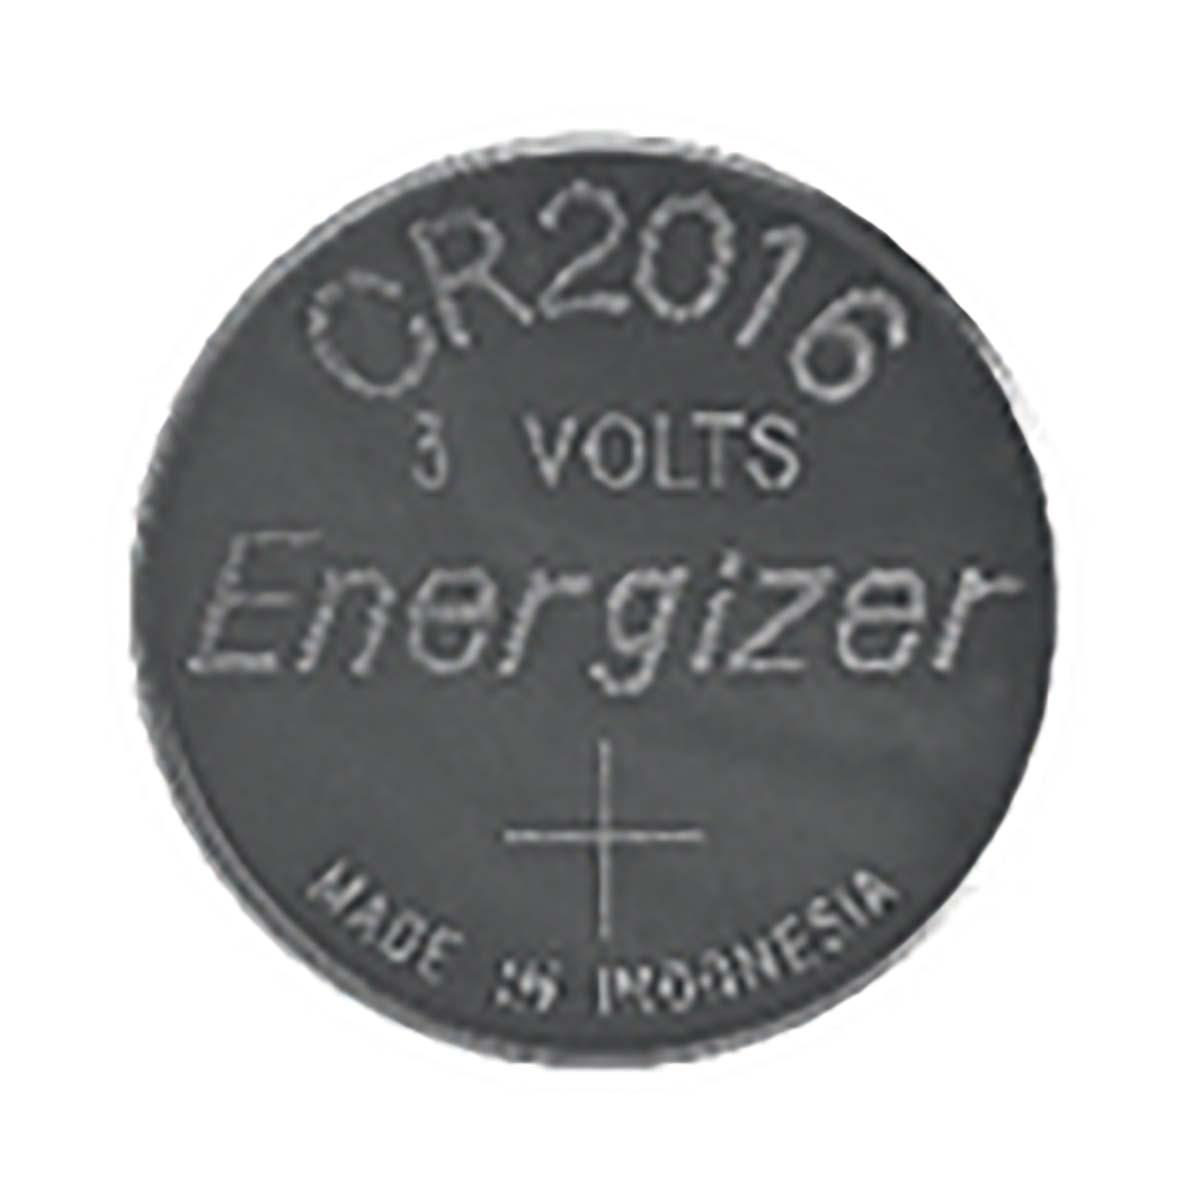 Energizer CR2016 Lithium-Knopfzelle 3 V DC | 100 mAh | 2-Blister | Silber